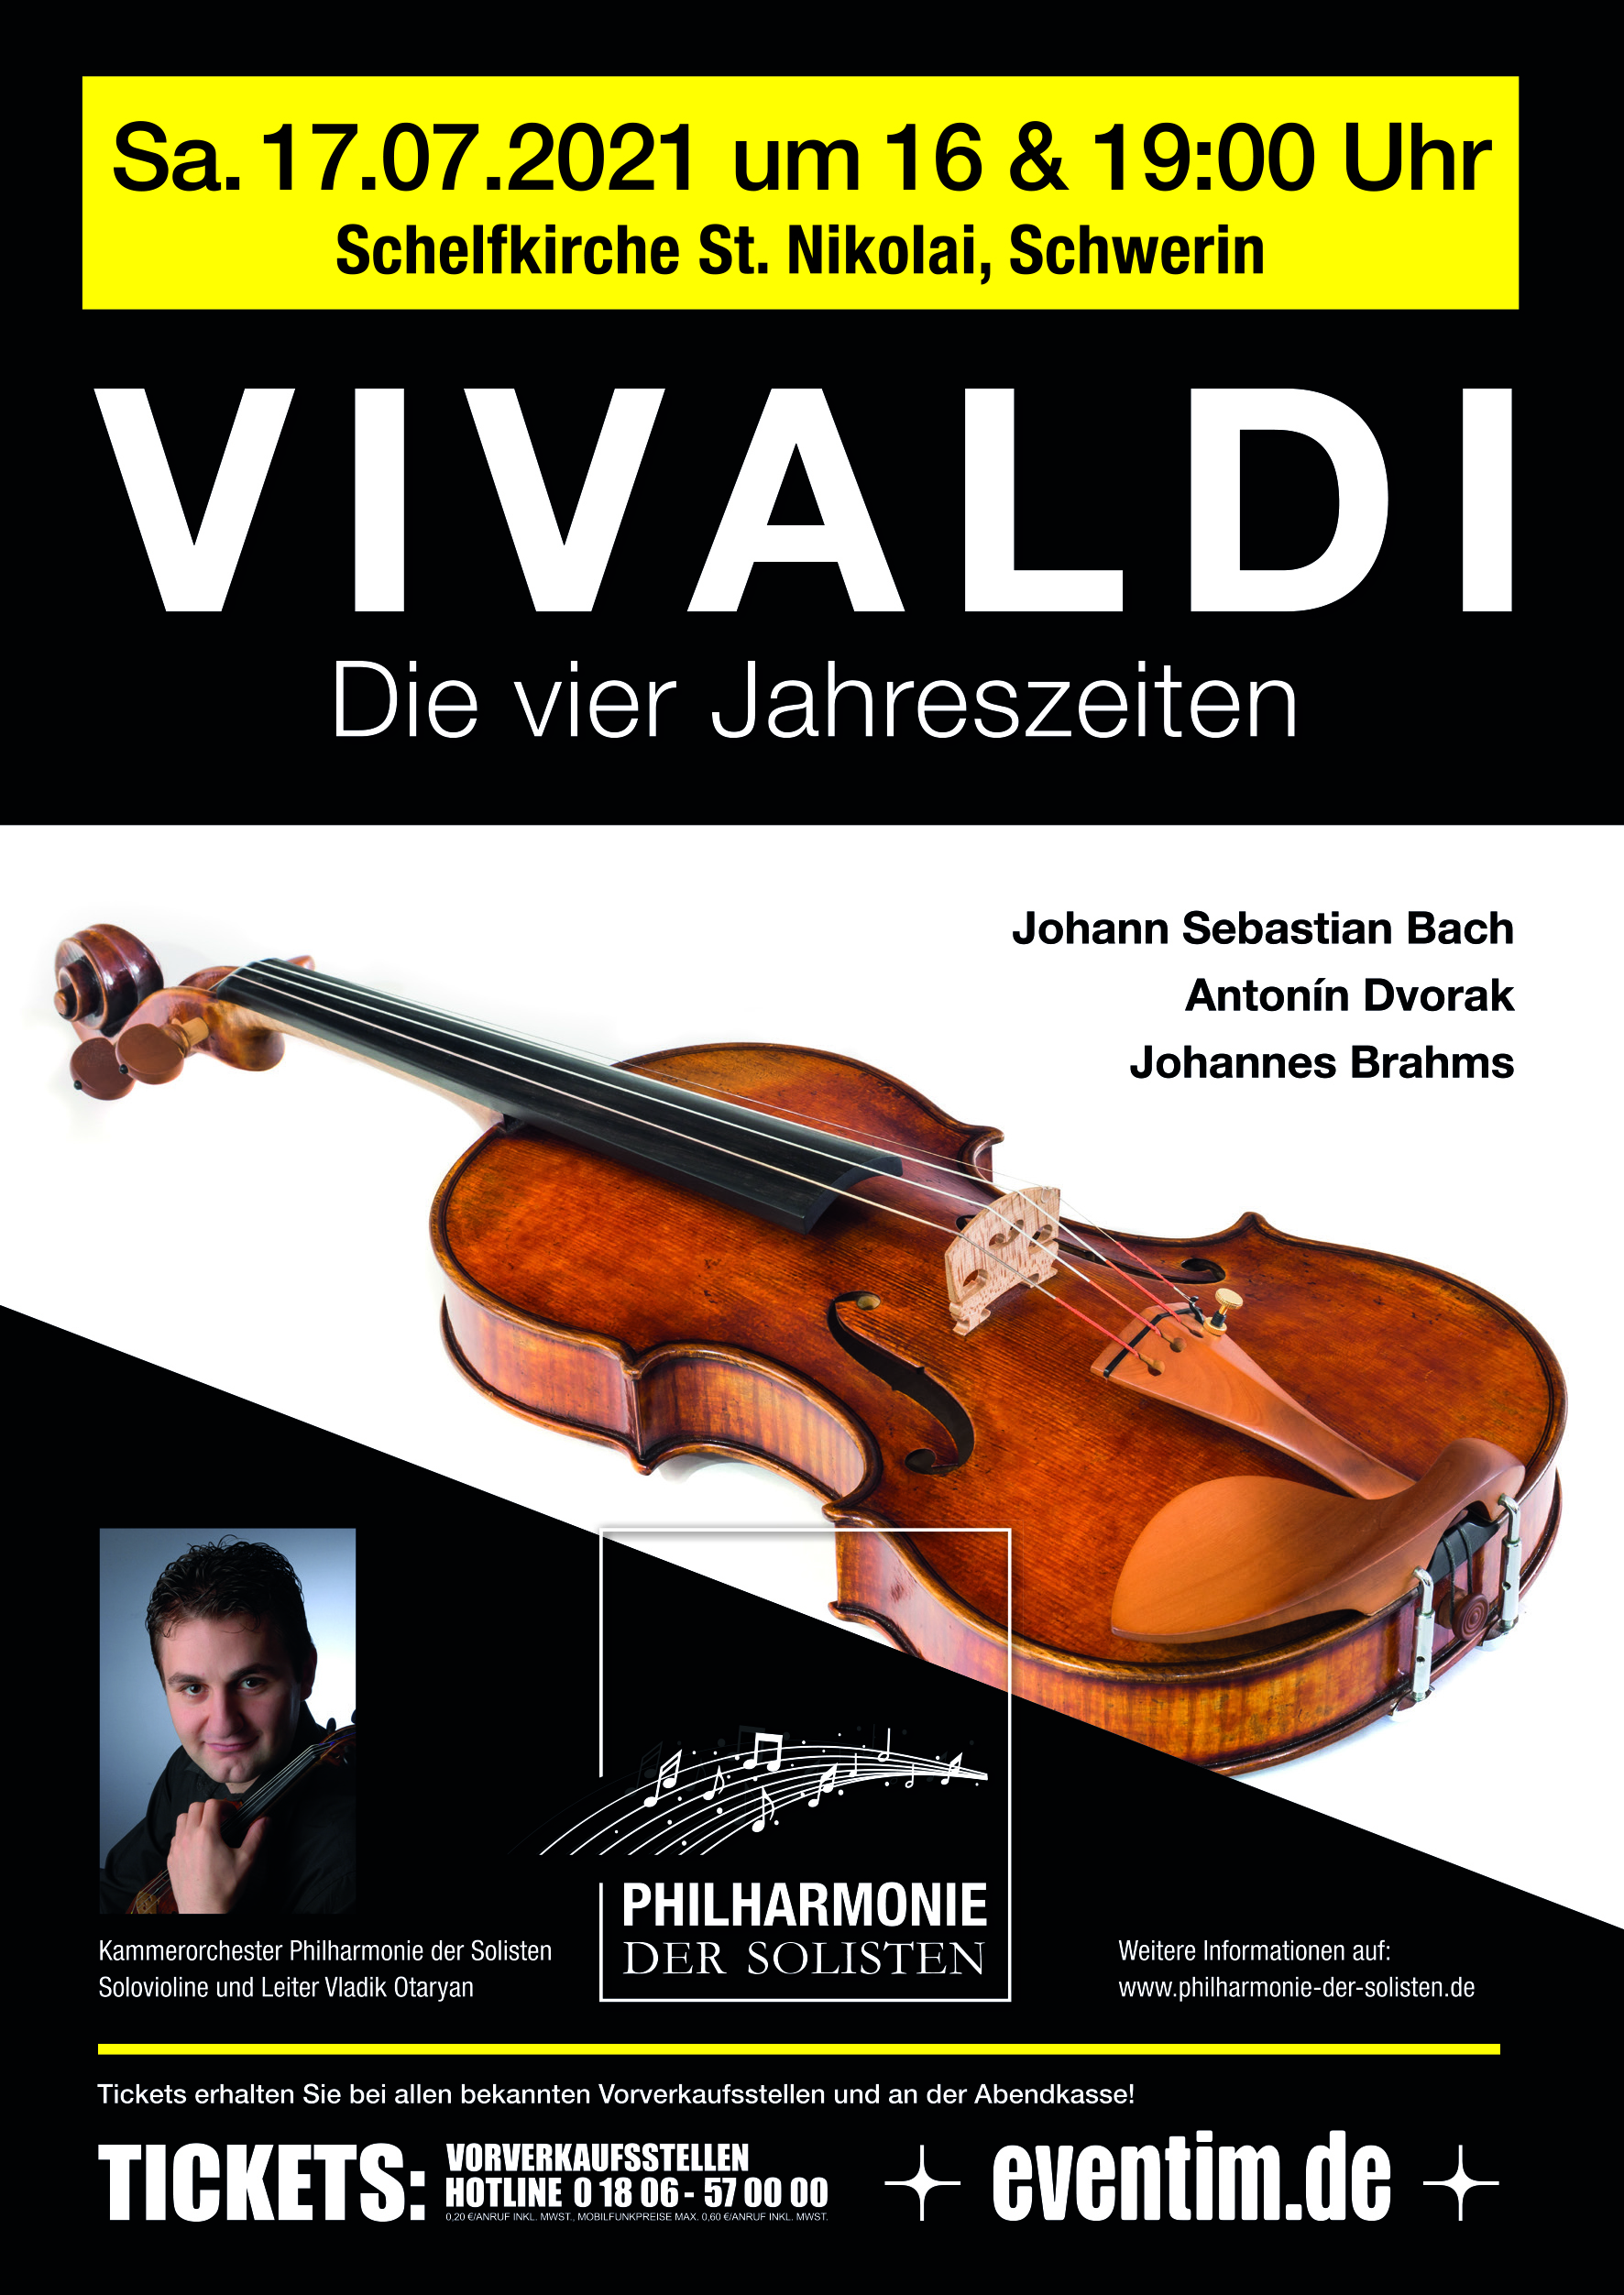 Schwerin: Klassik-Konzert am 17. Juli 2021 in der Schelfkirche